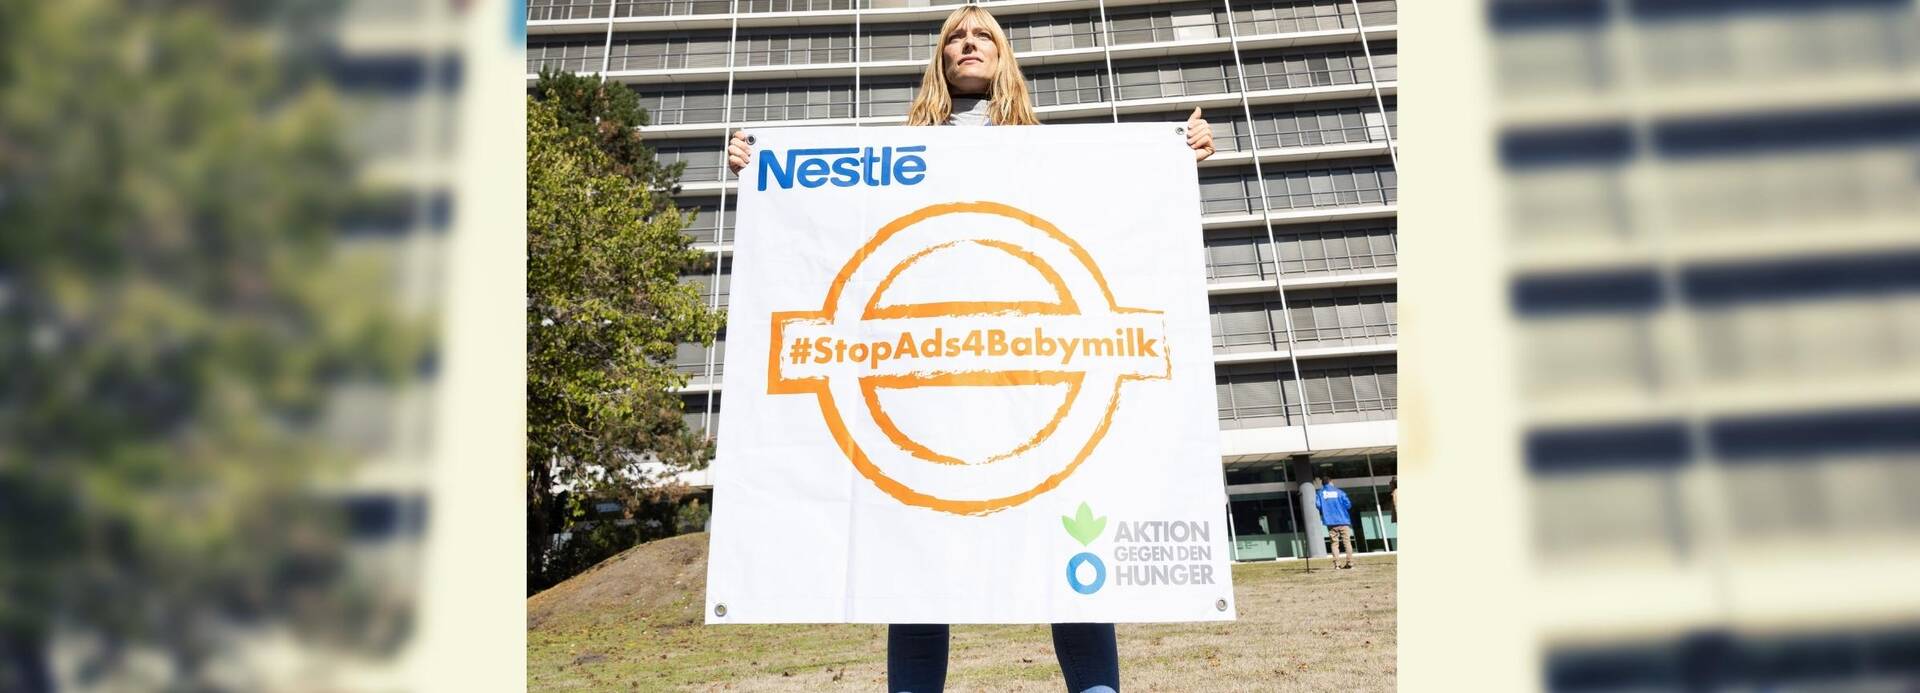 Unsere Kollegin steht vor der Nestlé-Zentrale in Frankfurt am Main und hält ein Banner mit einem orangefarbenen Stempel mit dem Hashtag #StopAds4Babymilk hoch.